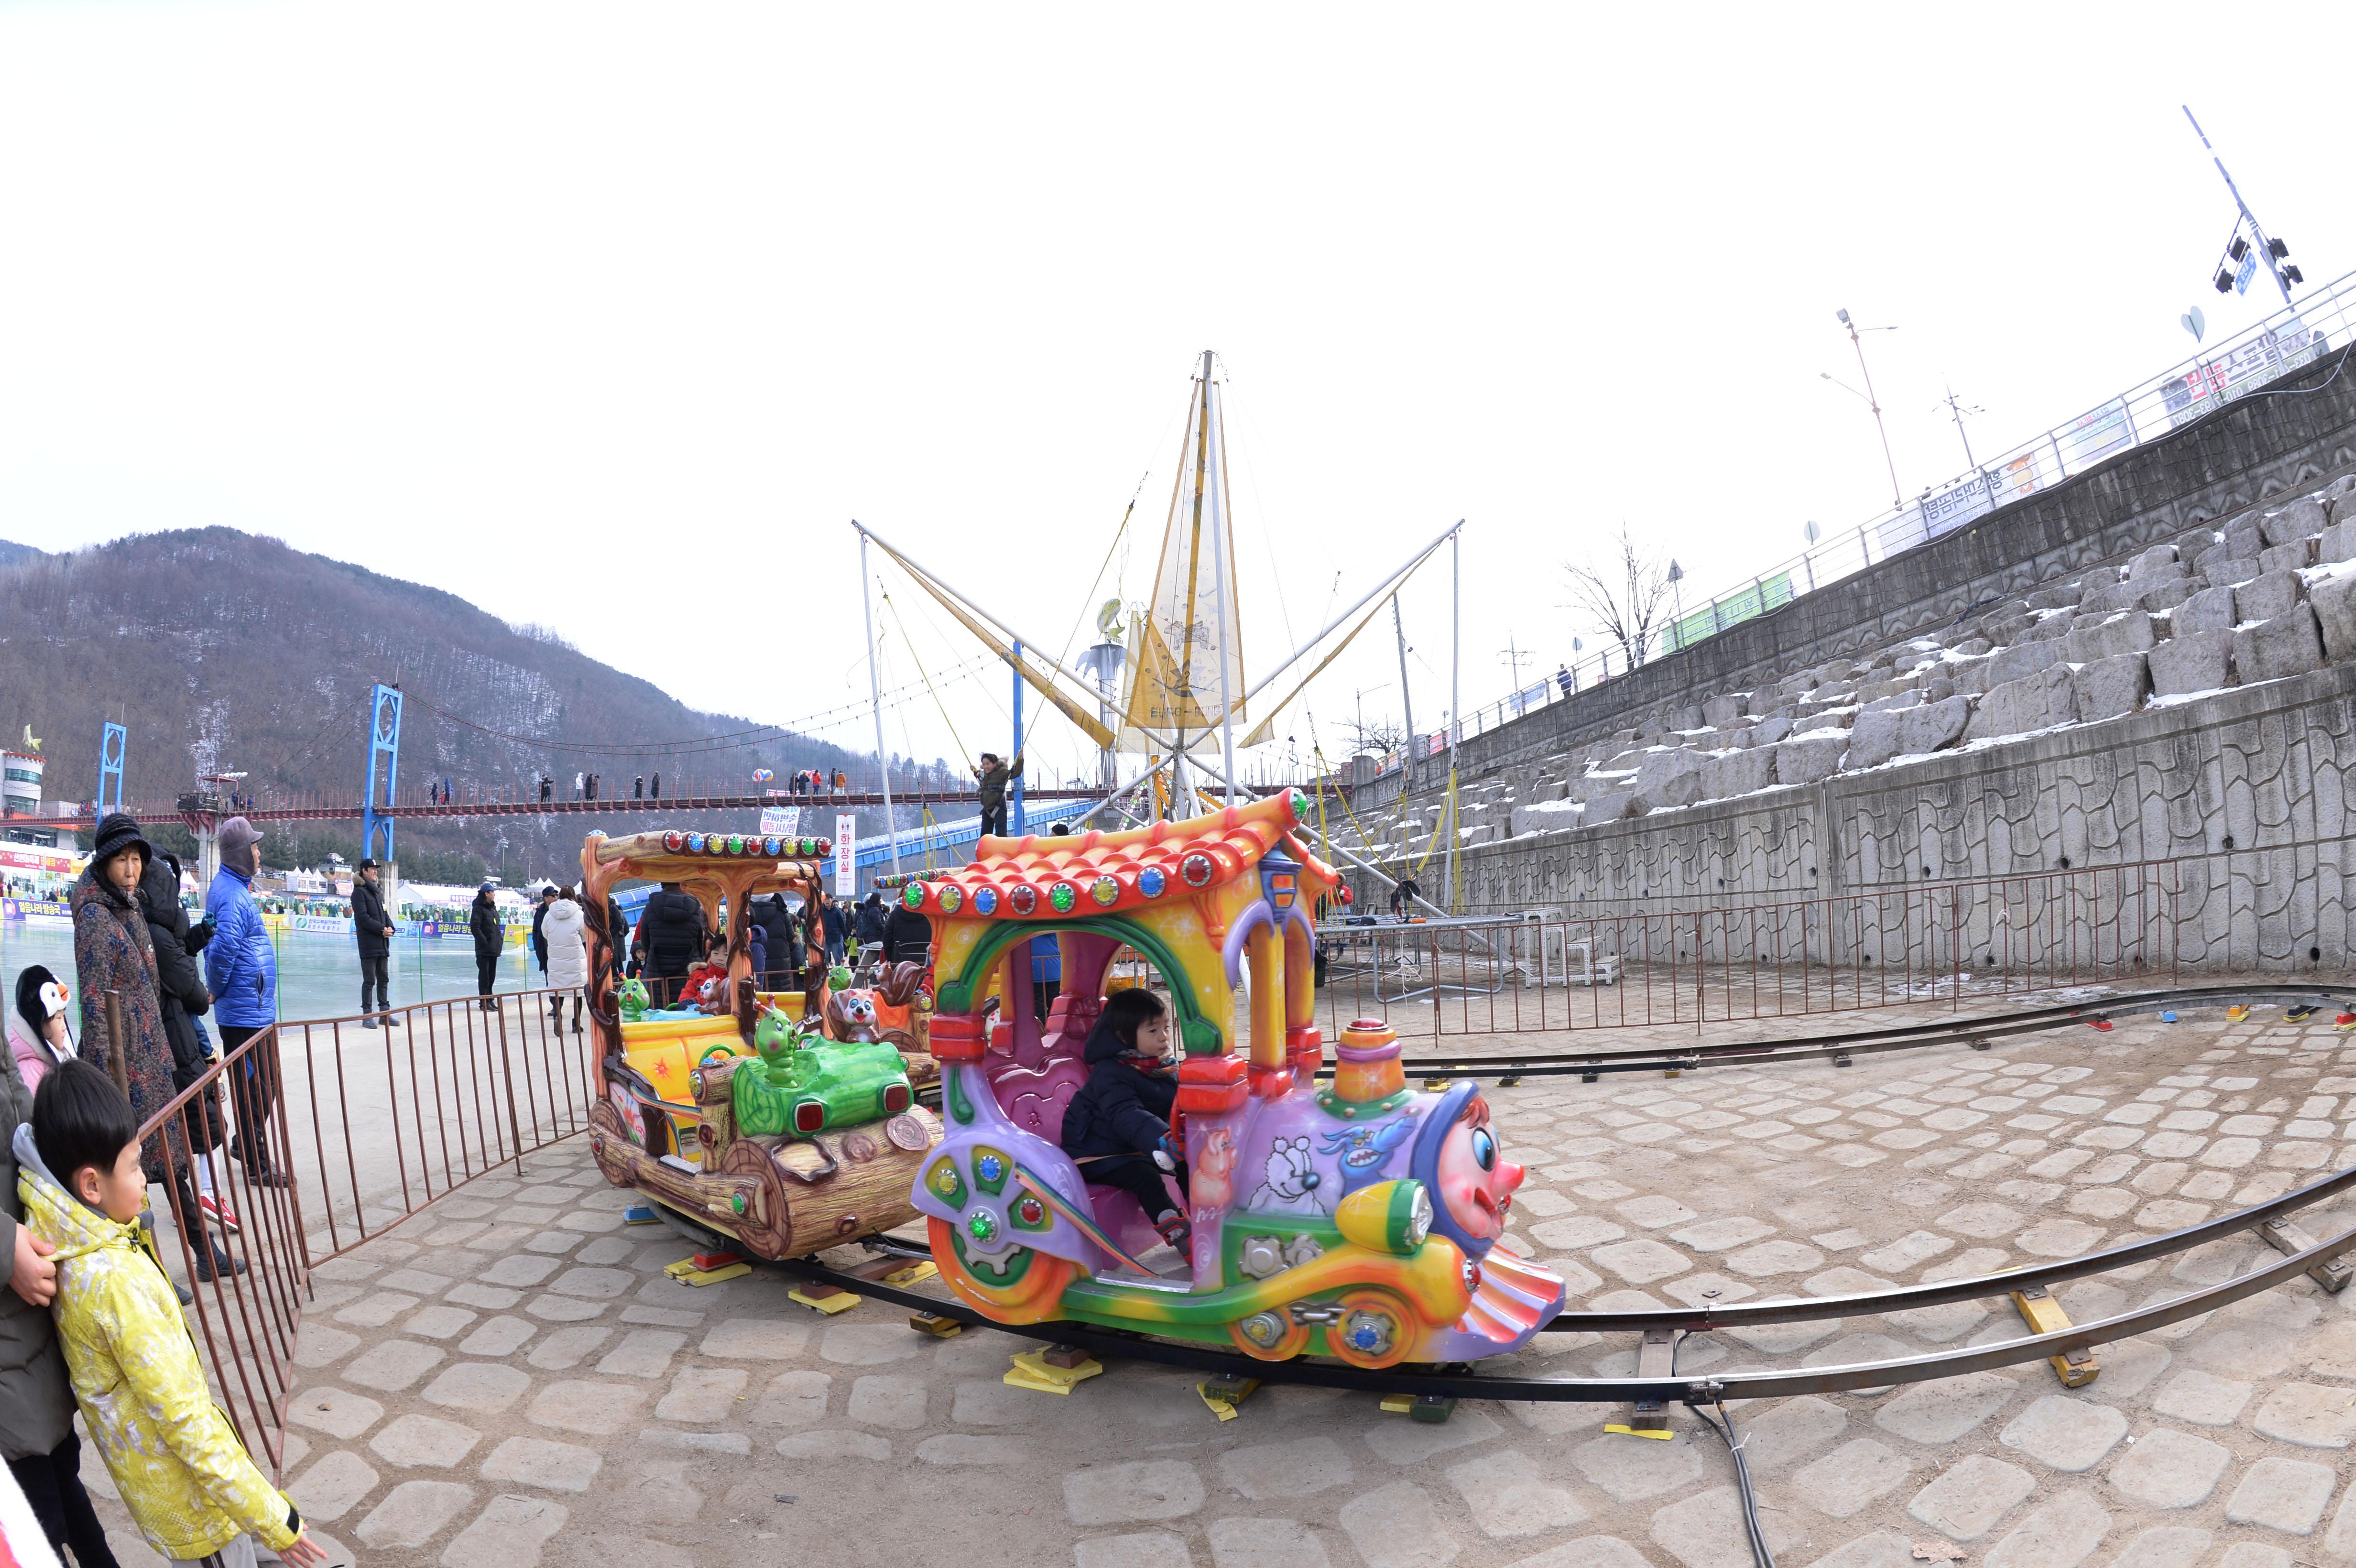 2018 화천산천어축제장 전경 의 사진